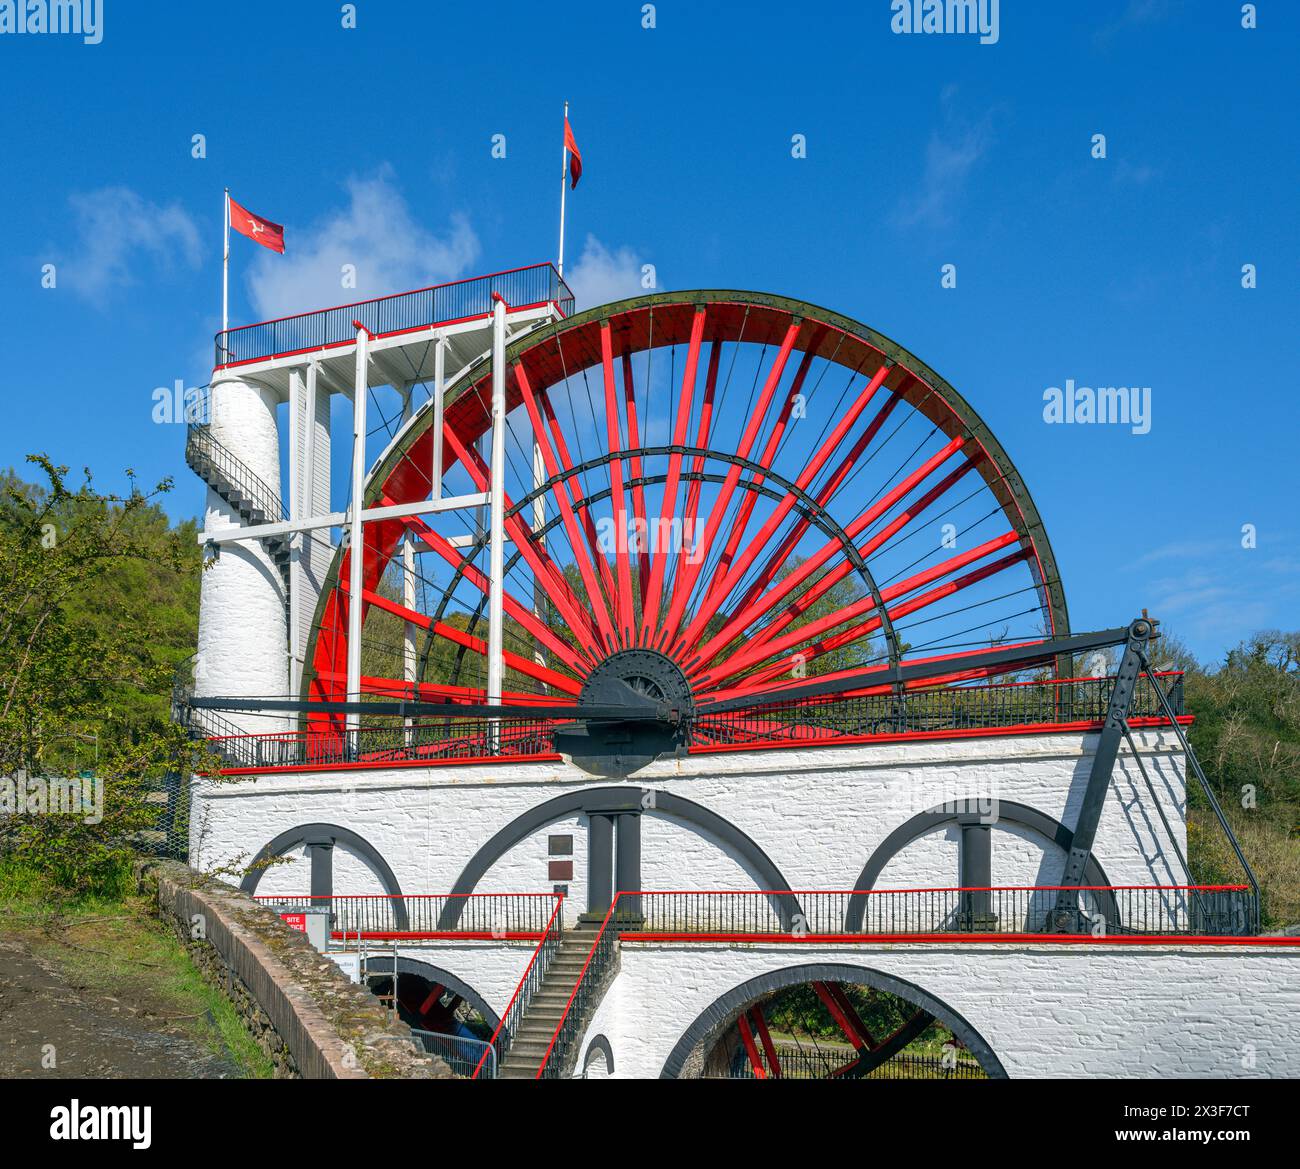 Laxey Wheel. Das Great Laxey Wheel oder das Lady Isabella Wheel, ein riesiges Wasserrad in Laxey, Isle of man, England, Großbritannien Stockfoto